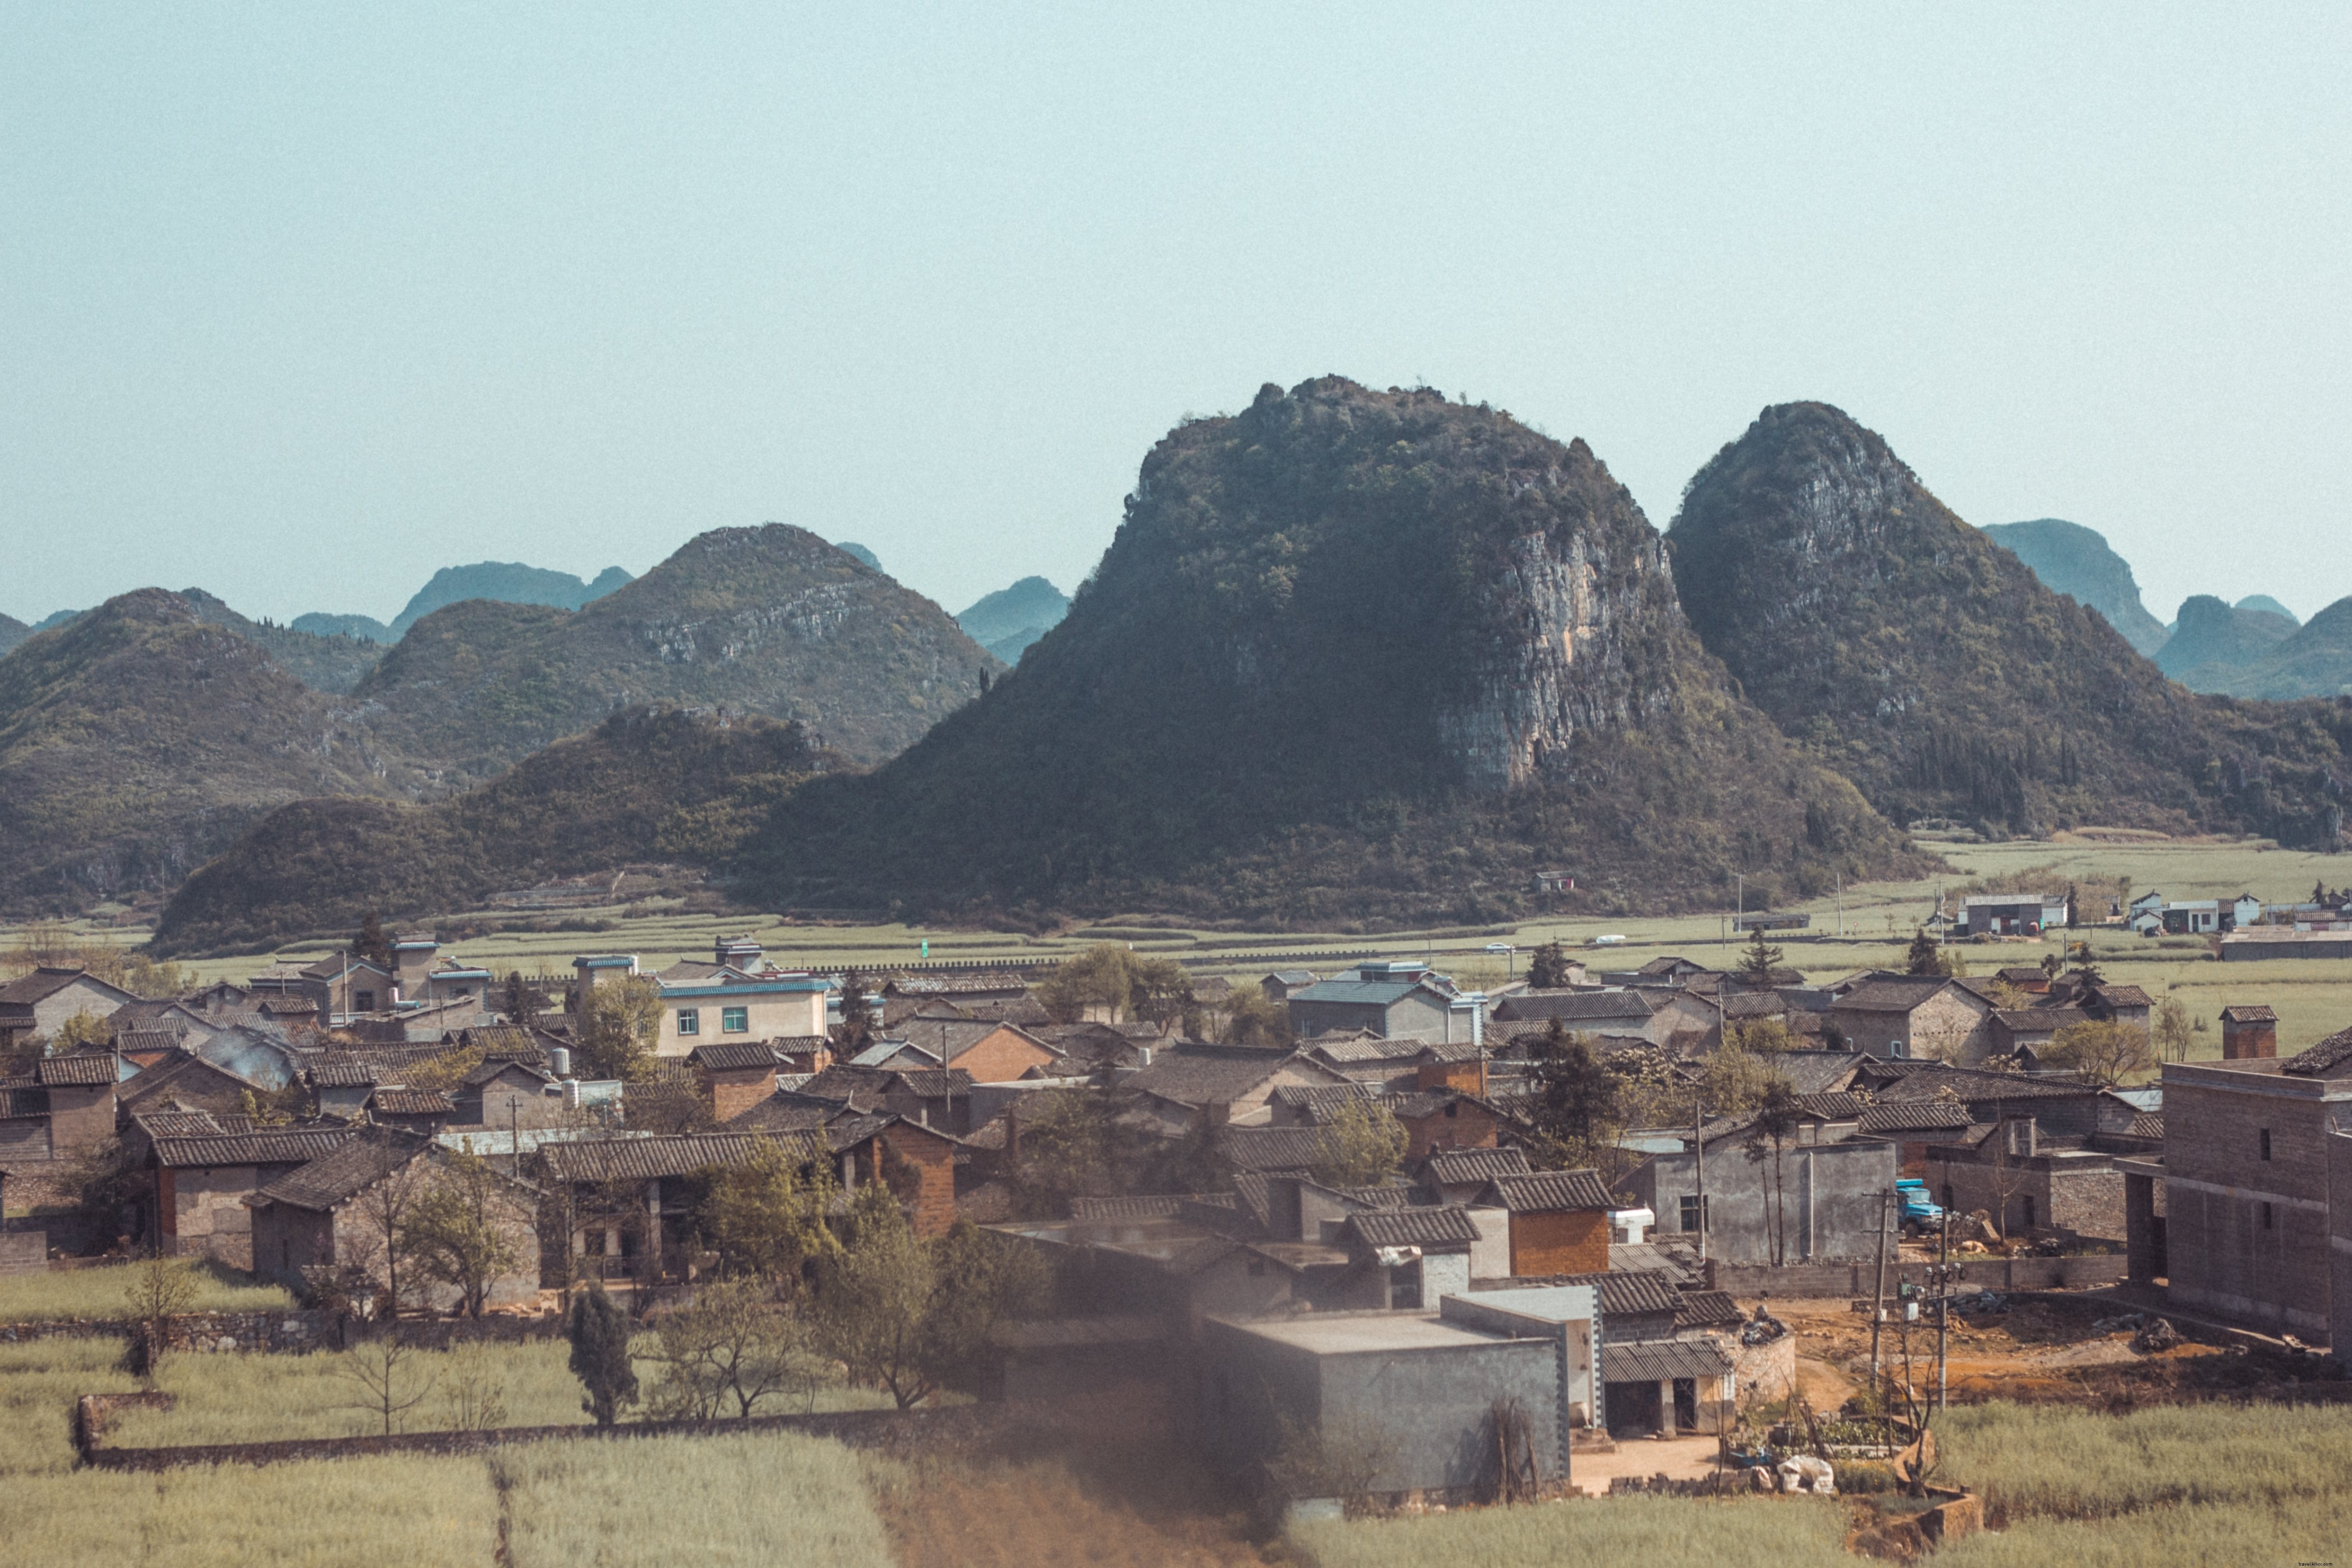 Vista de la aldea debajo de las montañas Foto